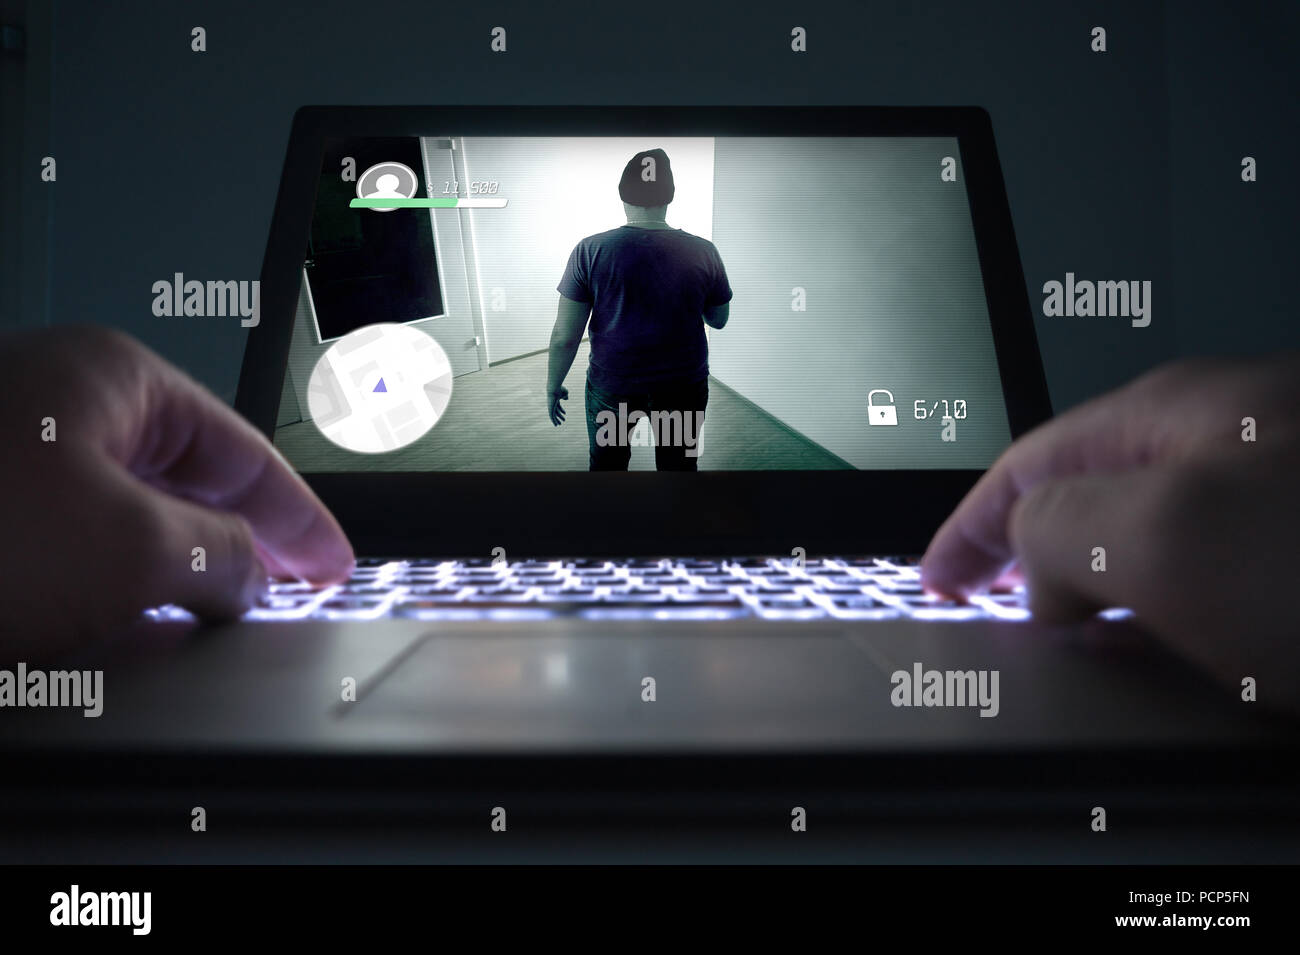 Teenager oder junge Mann spielt Aktion oder Kriminalität Videospiel mit Laptop. Computer und online gaming Konzept. Niedrig zu sehen, in der Nähe der Hände auf der Tastatur. Stockfoto